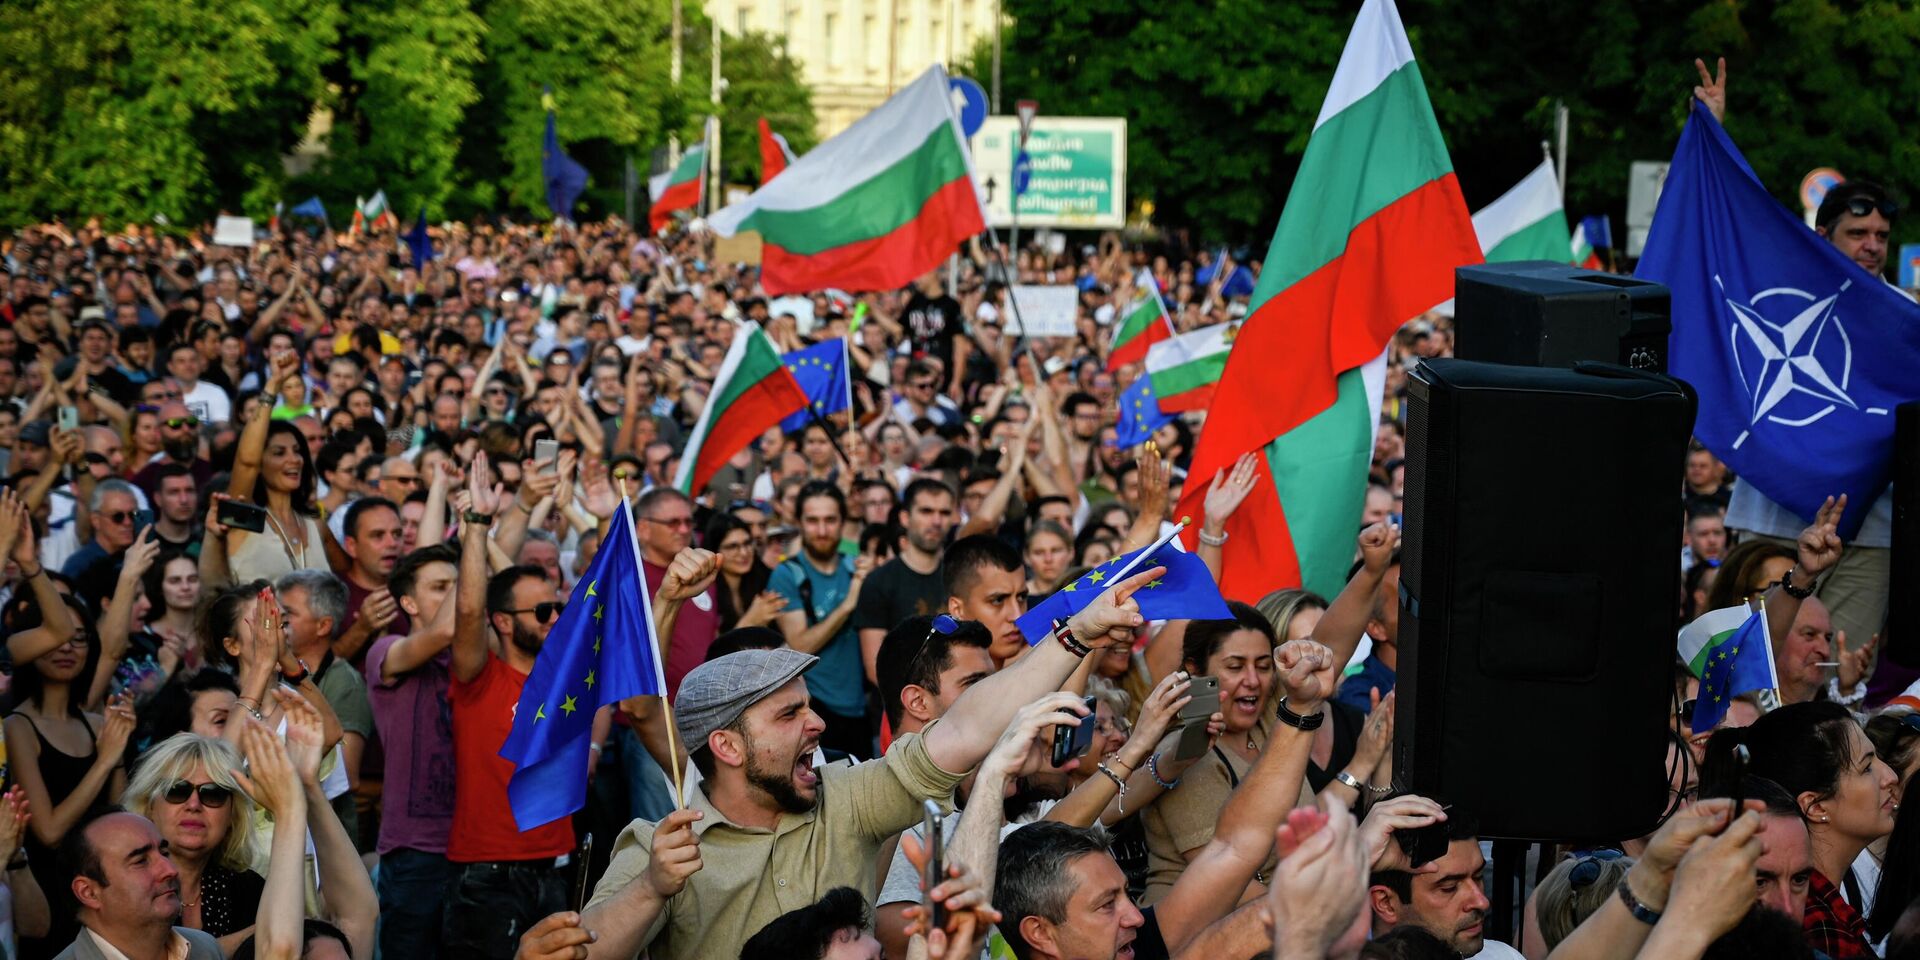 22 июня 2022 года. Акция протеста в Софии, Болгария - ИноСМИ, 1920, 25.12.2022